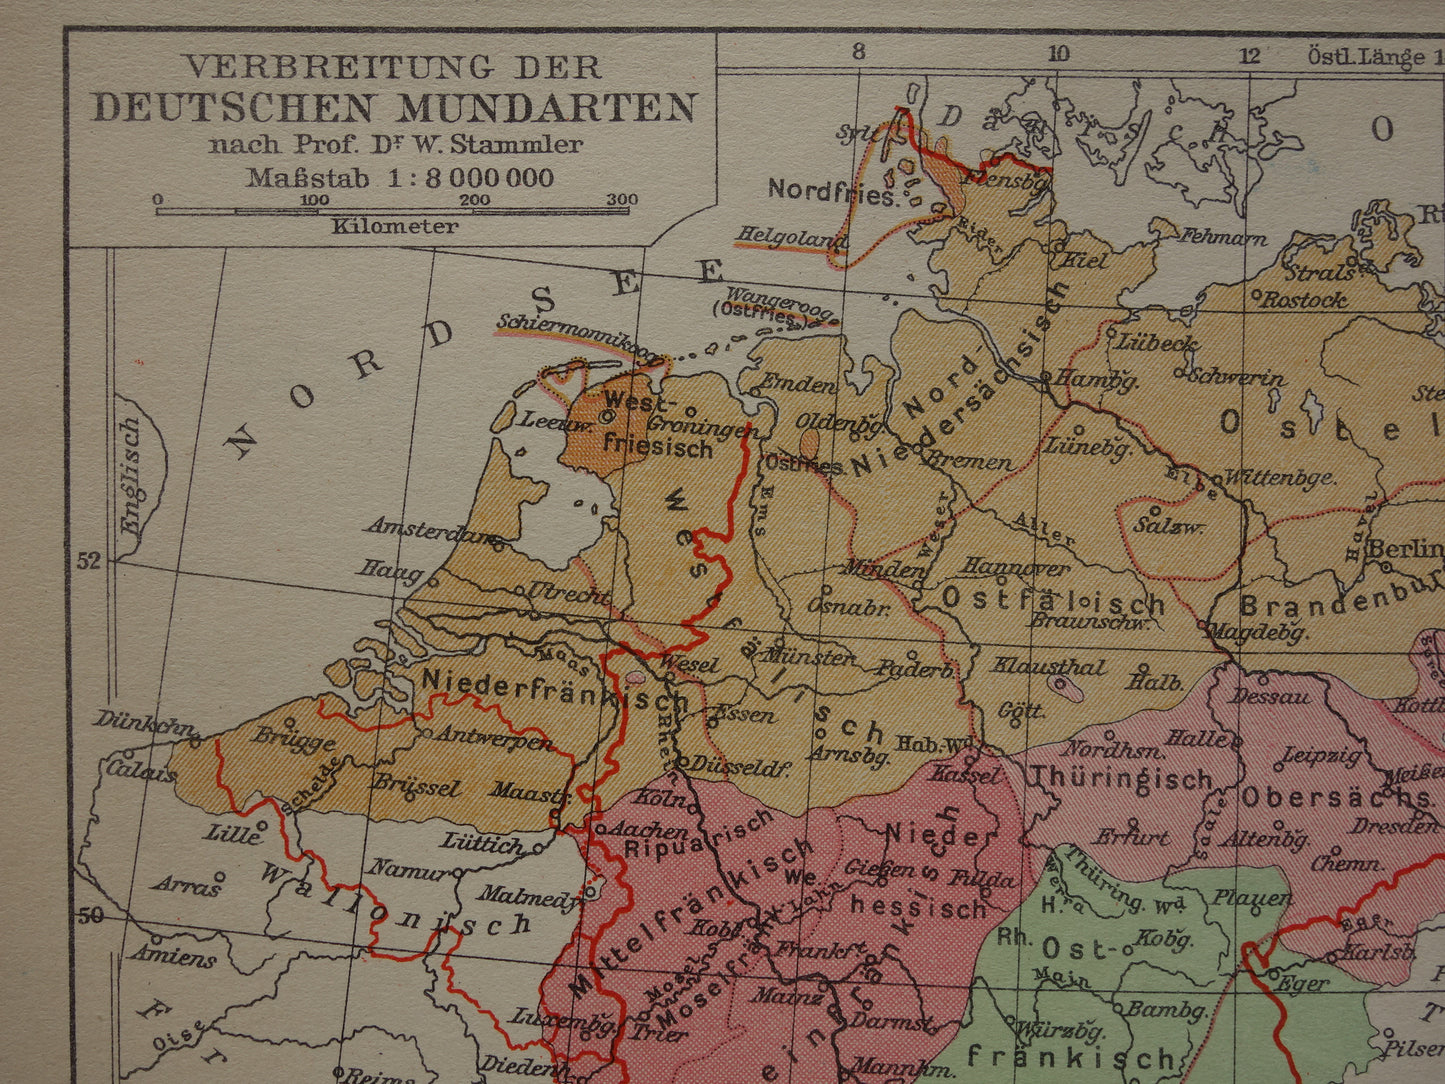 DUITSLAND oude taalkundige kaart van Duitse dialecten - kleine originele vintage landkkaart uit 1931 van het Duitse rijk dialect - taalkaart Hoogduits Nederduits